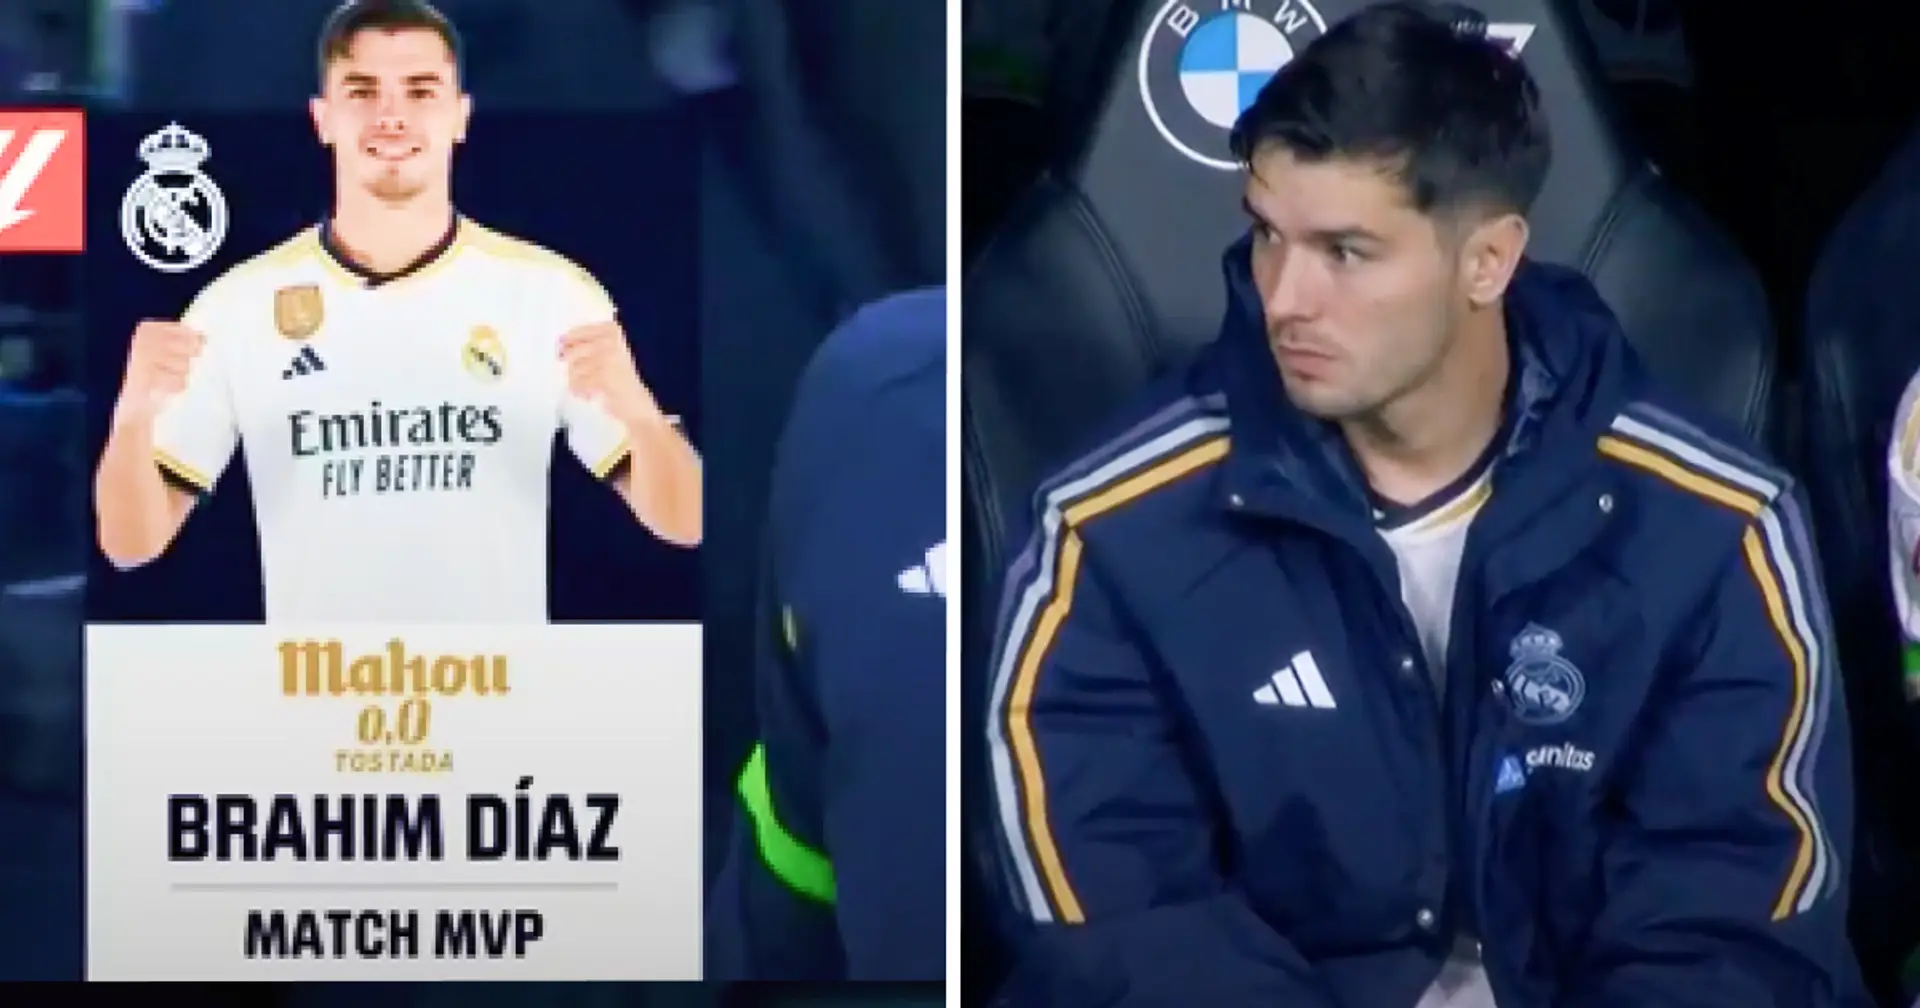 Visto: La cara de Brahim Díaz tras el partido vs Atlético es la de cada madridista